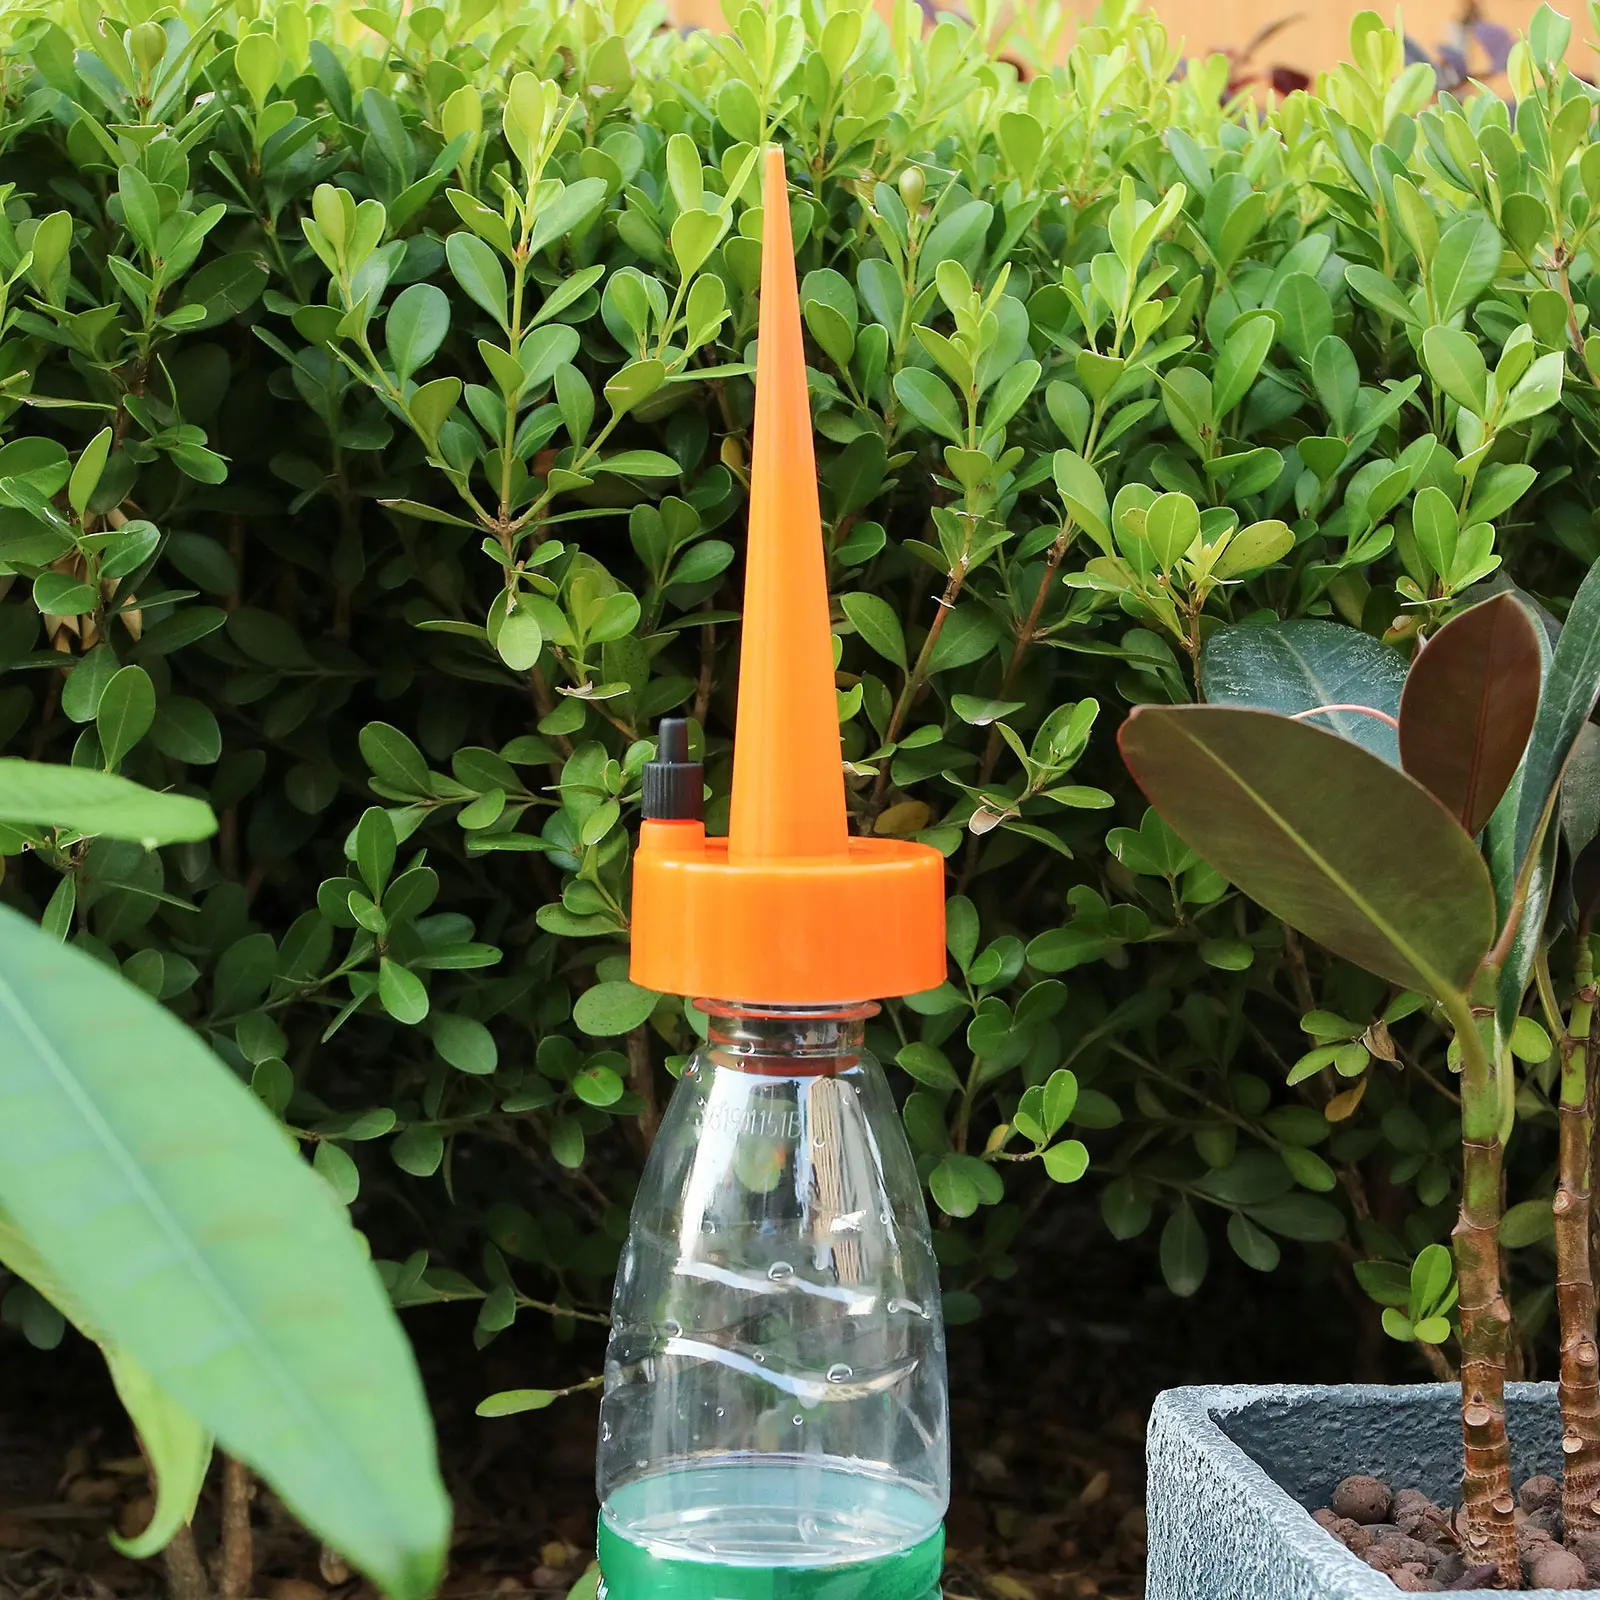 

Профессиональные пластиковые капельницы для полива растений